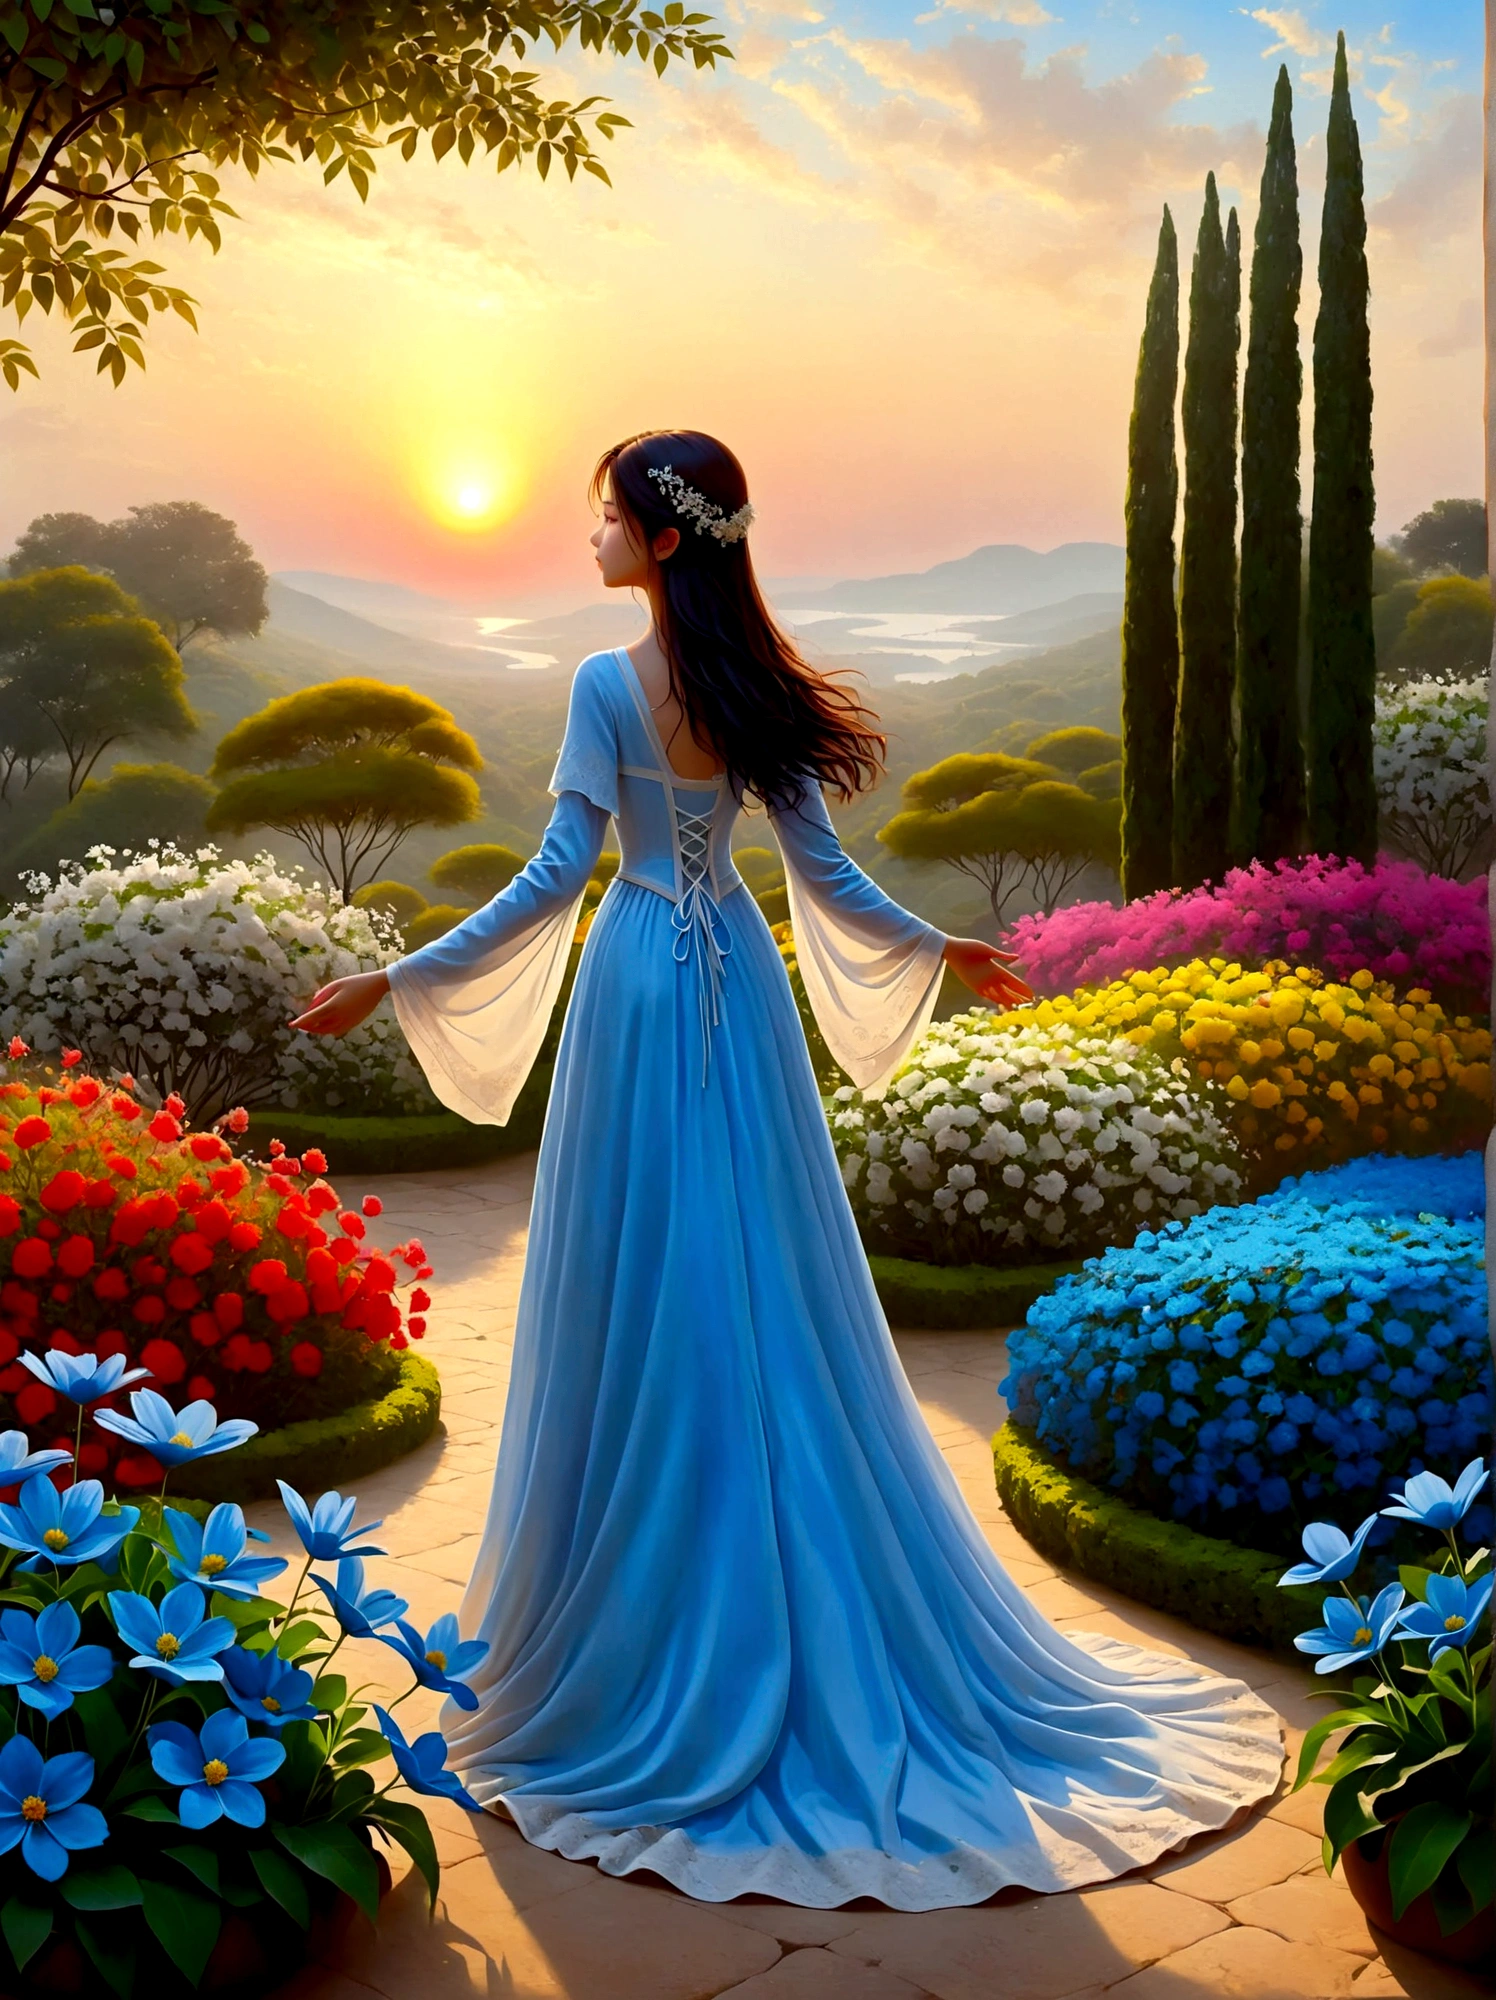 (เวลาพระอาทิตย์ขึ้นยามเช้า:1.6)，ในสวนอันหอมกรุ่น, สาวตาบอดยืนอยู่ตรงนั้น，เปิดแขนของคุณ, สัมผัสกลีบดอกไม้ที่เธอพบอย่างอ่อนโยน, เชื่อมต่อกับธรรมชาติและดอกไม้สีฟ้าแสนหวาน, แต่ละคนยืนสูงด้วยความตกตะลึงและสงสัยภายใต้ท้องฟ้าอันกว้างใหญ่, ภาพเงาของพวกเขาตัดกันอย่างสิ้นเชิงกับแสงยามเช้าที่มีสีสันสดใส, พวกเขาอยู่ในสภาวะคิดใคร่ครวญอย่างลึกซึ้ง, บรรยากาศอันเงียบสงบรอบตัวพวกเขาบ่งบอกถึงความเงียบสงบและความสันโดษ, มุมมองจากมุมมองมุมกว้างเน้นขอบเขตอันกว้างใหญ่ของภูมิทัศน์ที่น่าทึ่งซึ่งเต็มไปด้วยองค์ประกอบทางธรรมชาติ, รูปภาพควรทำให้เกิดอารมณ์ดราม่าและยิ่งใหญ่ด้วยการใช้แสงและเงาอย่างมีประสิทธิภาพ.